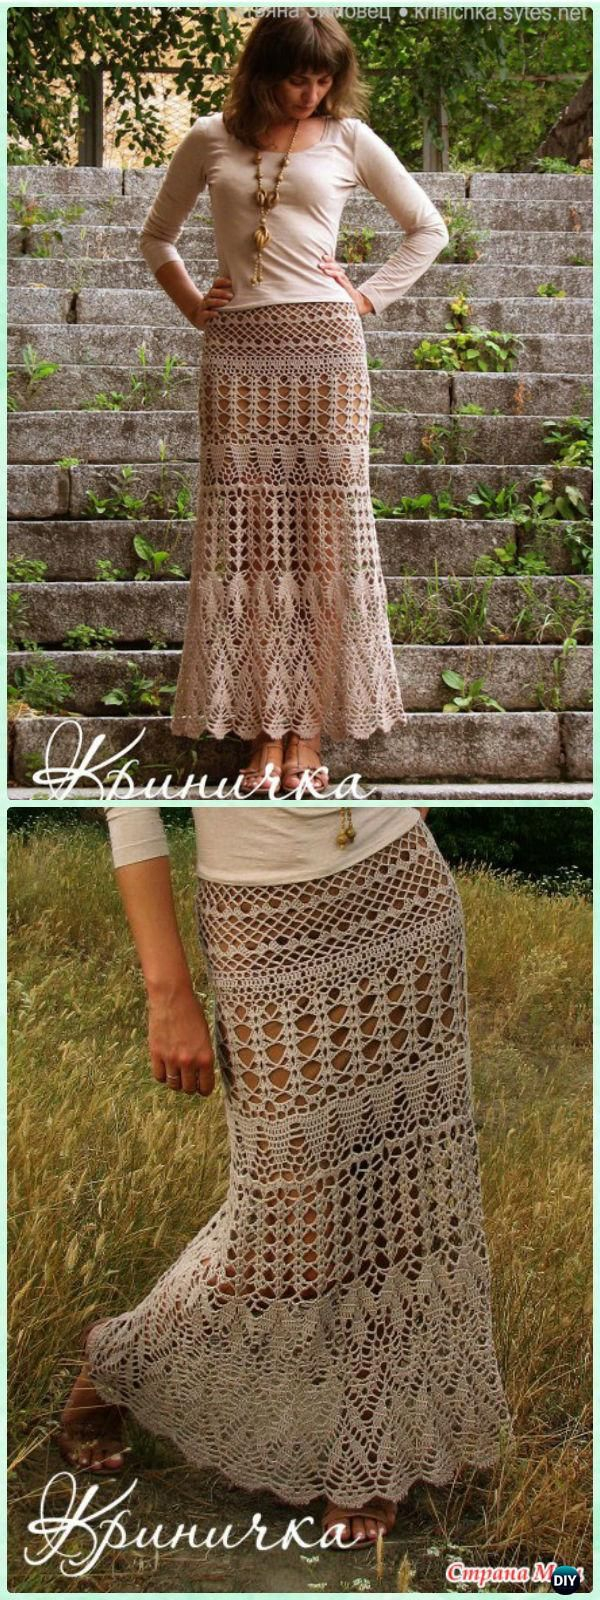 Crochet Maxi Skirt Pattern Crochet Women Skirt Free Patterns Instructions Crochet And